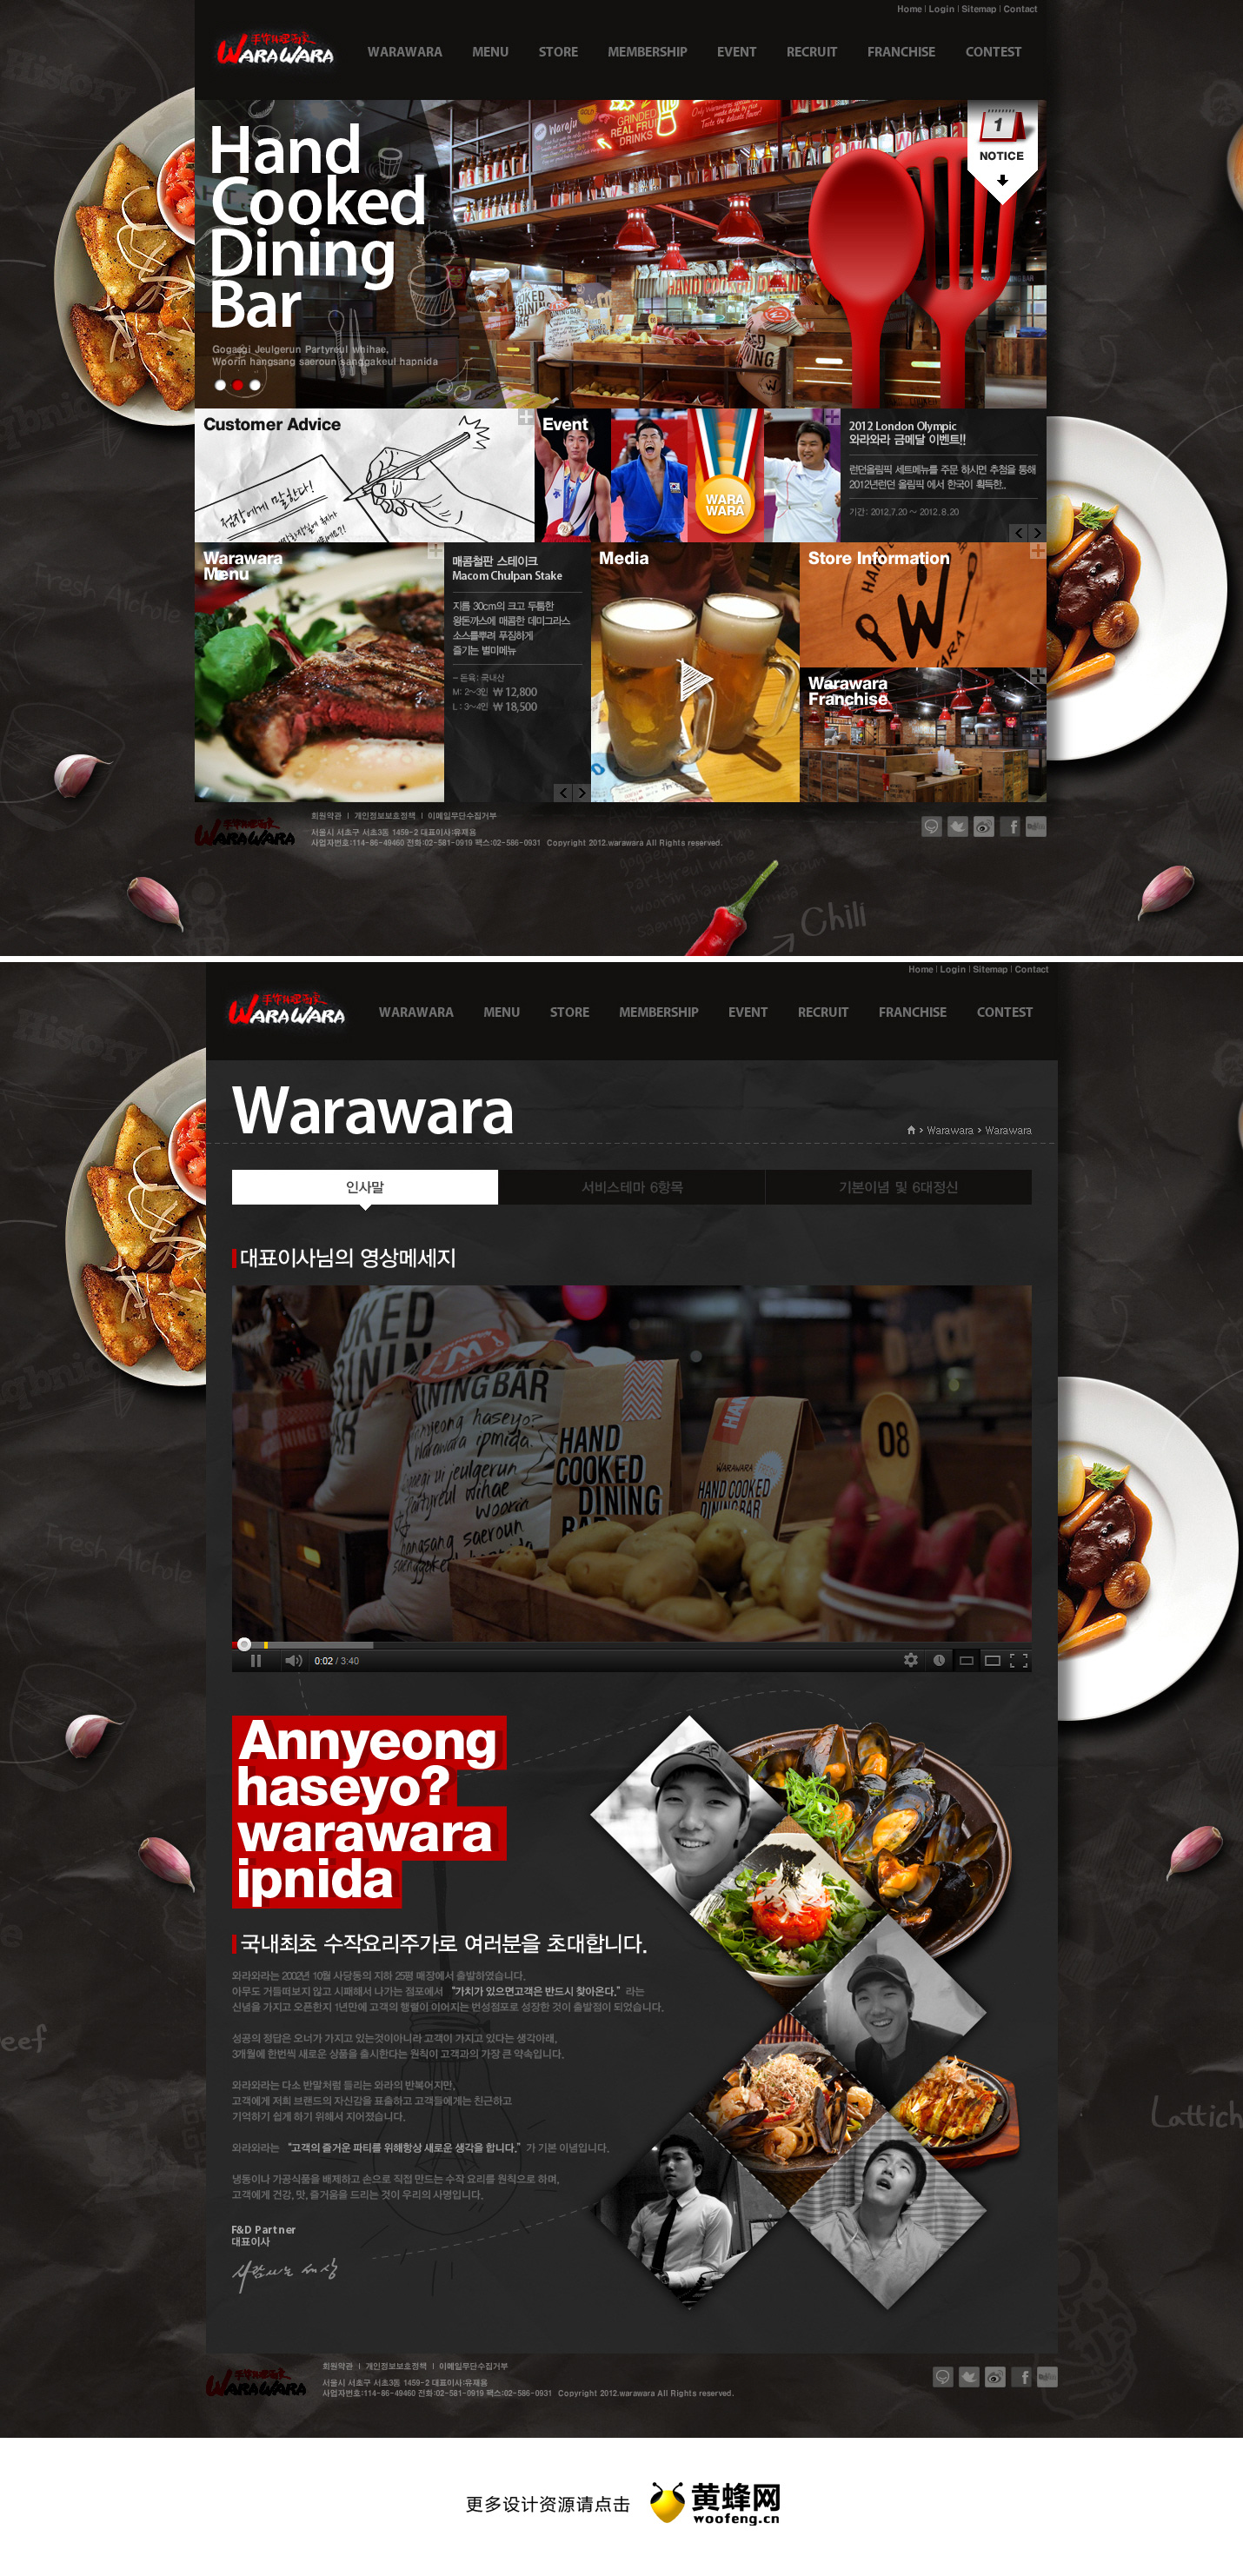 WaraWara餐厅网站设计欣赏，来源自黄蜂网https://woofeng.cn/